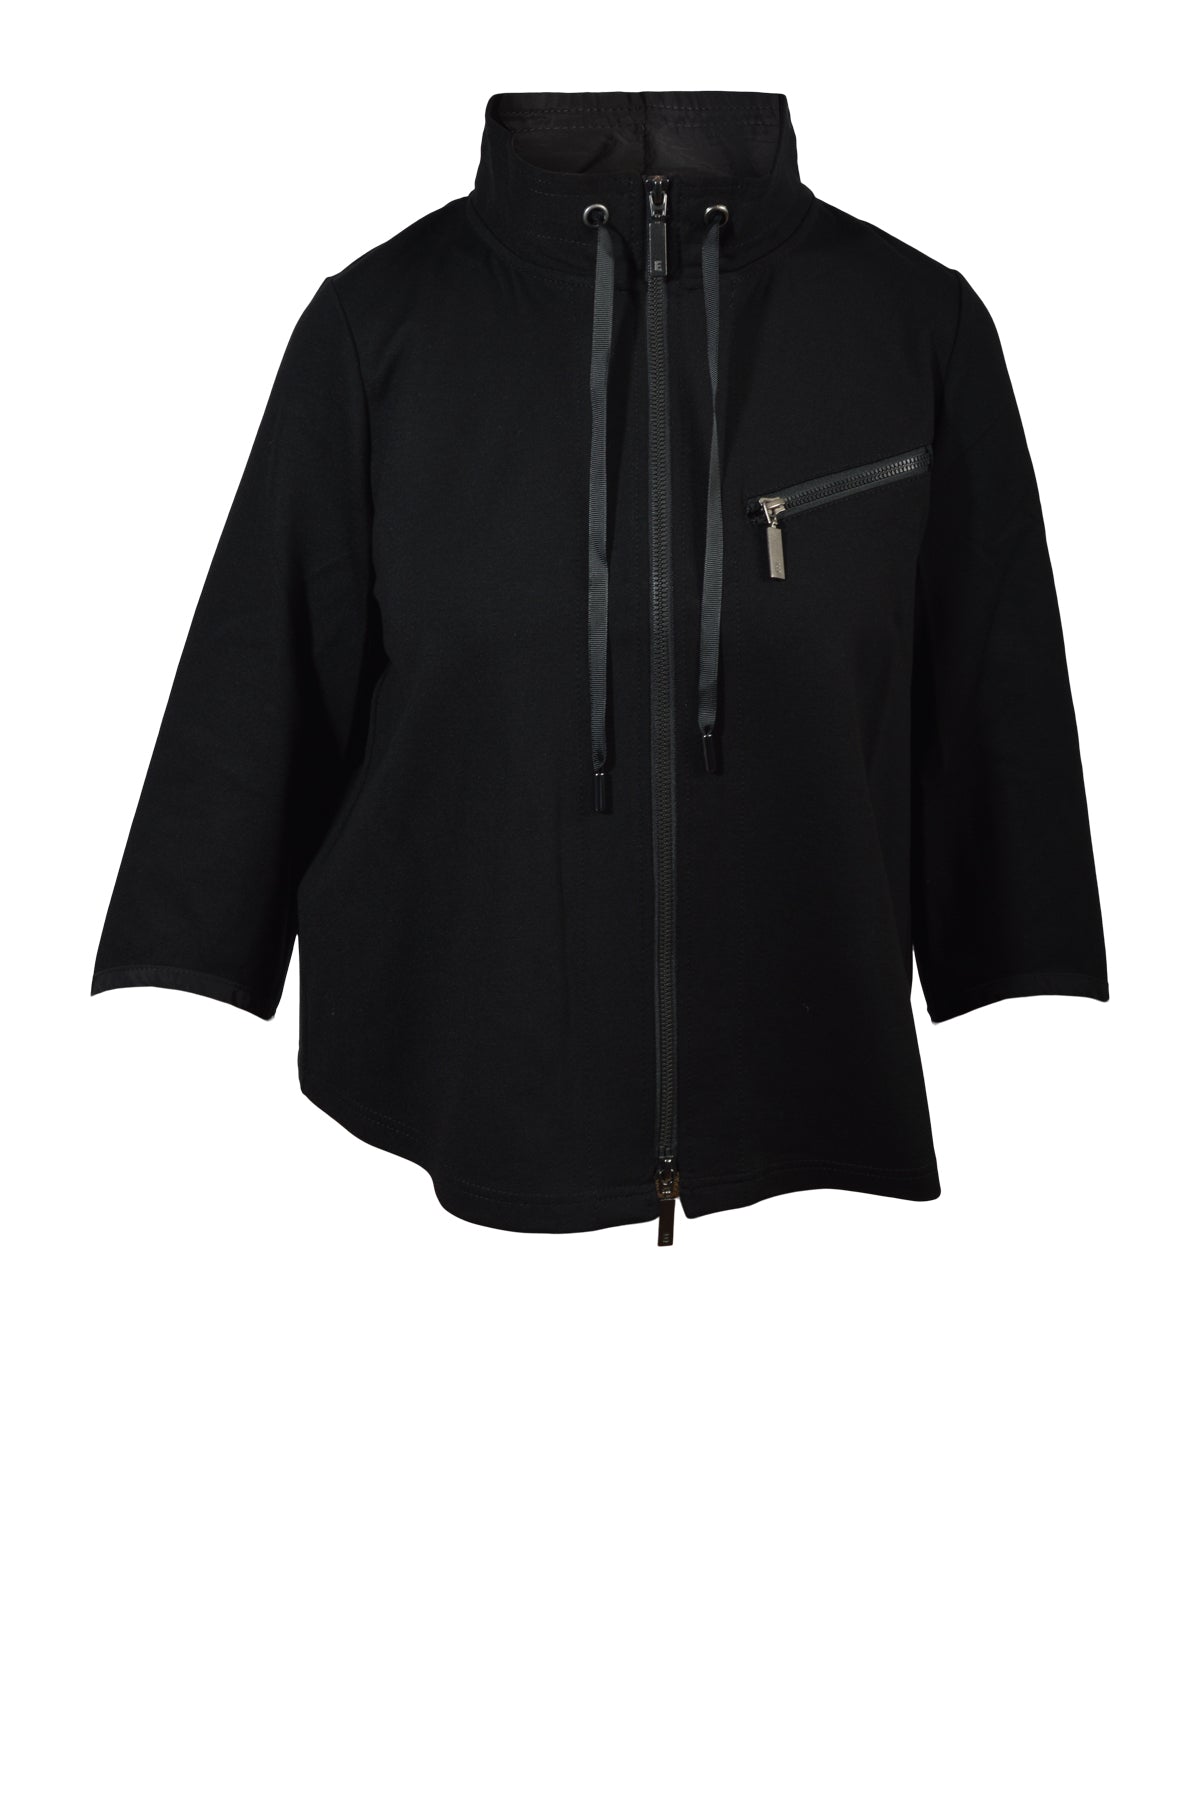 E Avantgarde Jacket 14016, Black